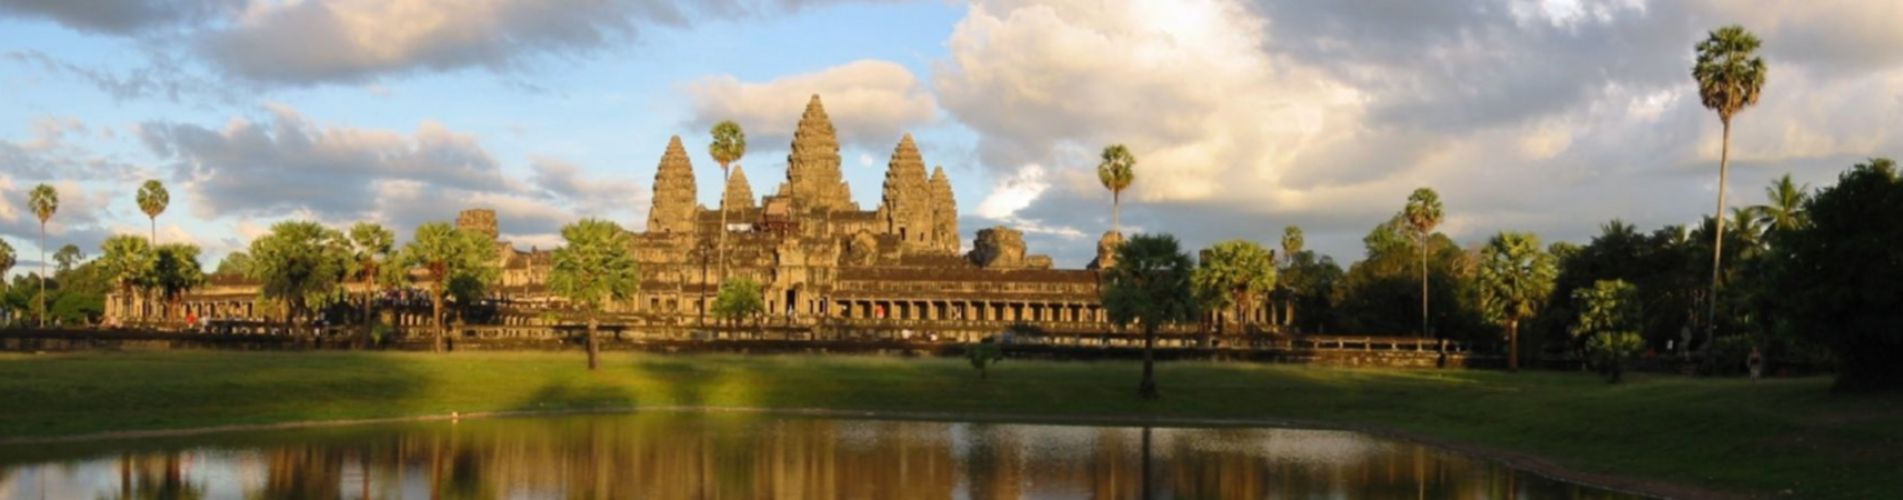 Các điểm du lịch tại Campuchia